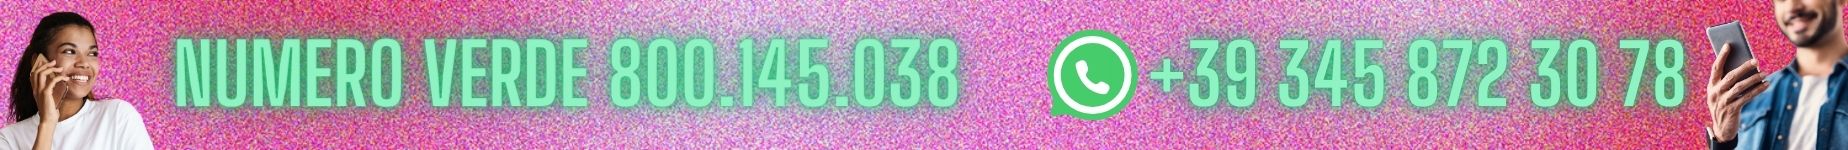 Numero Verde GelatoFacile.it 800.145.038